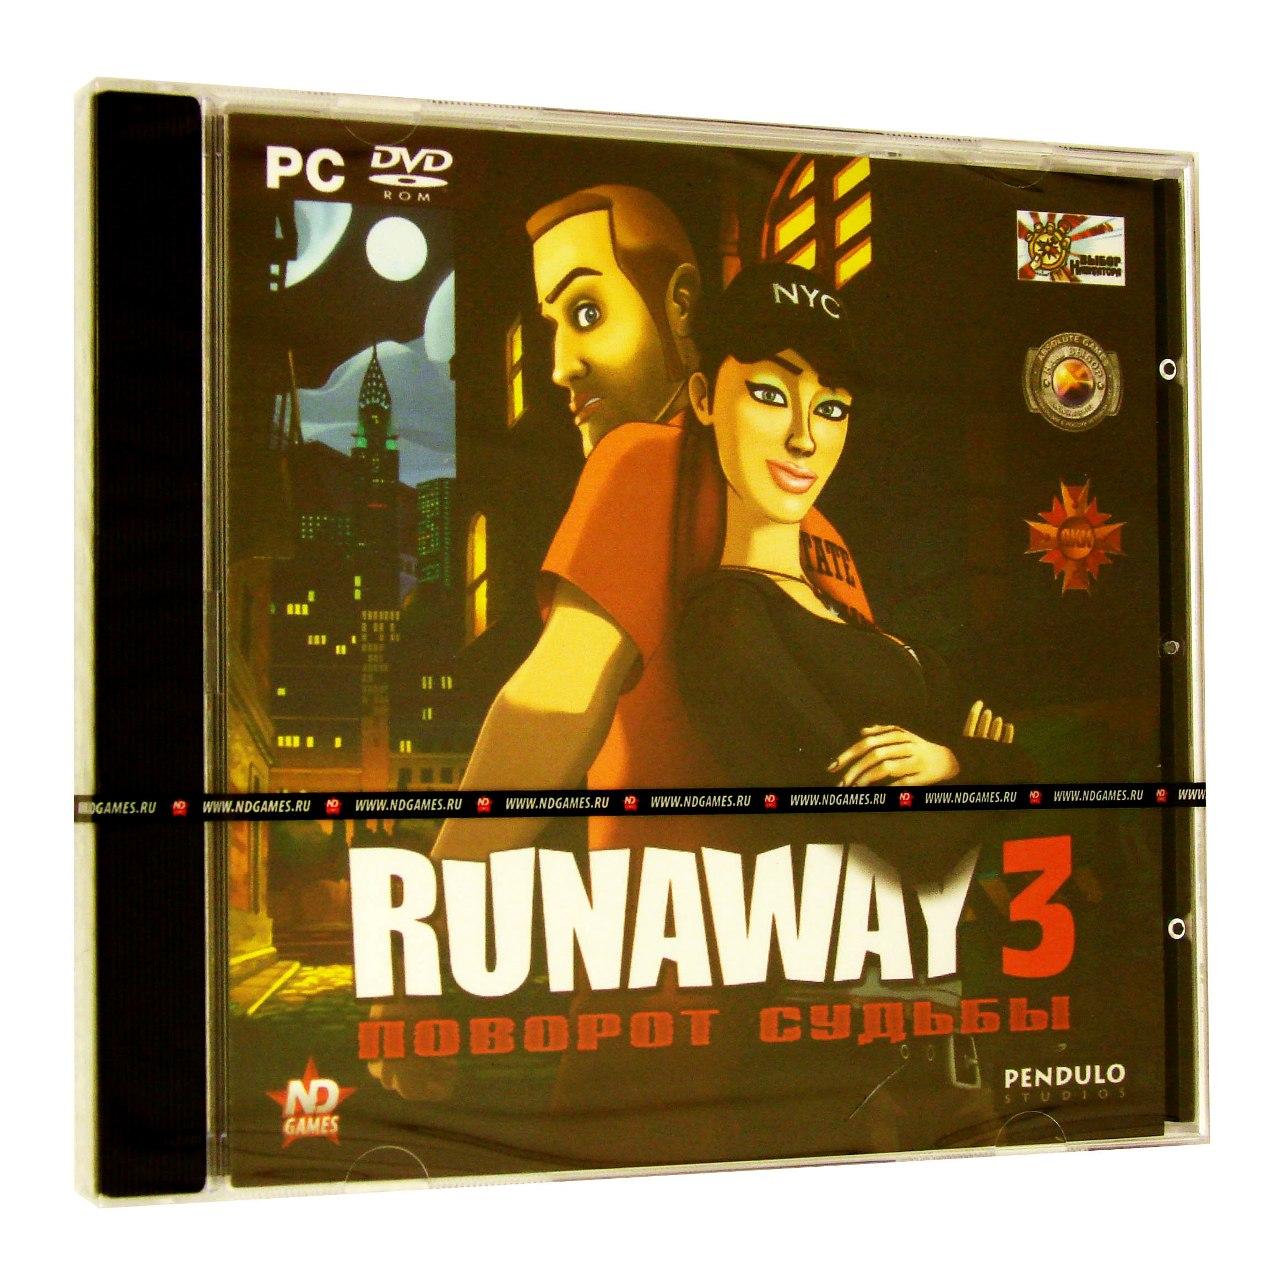 Компьютерный компакт-диск Runaway 3: Поворот судьбы (ПК), фирма "Новый диск", 1DVD